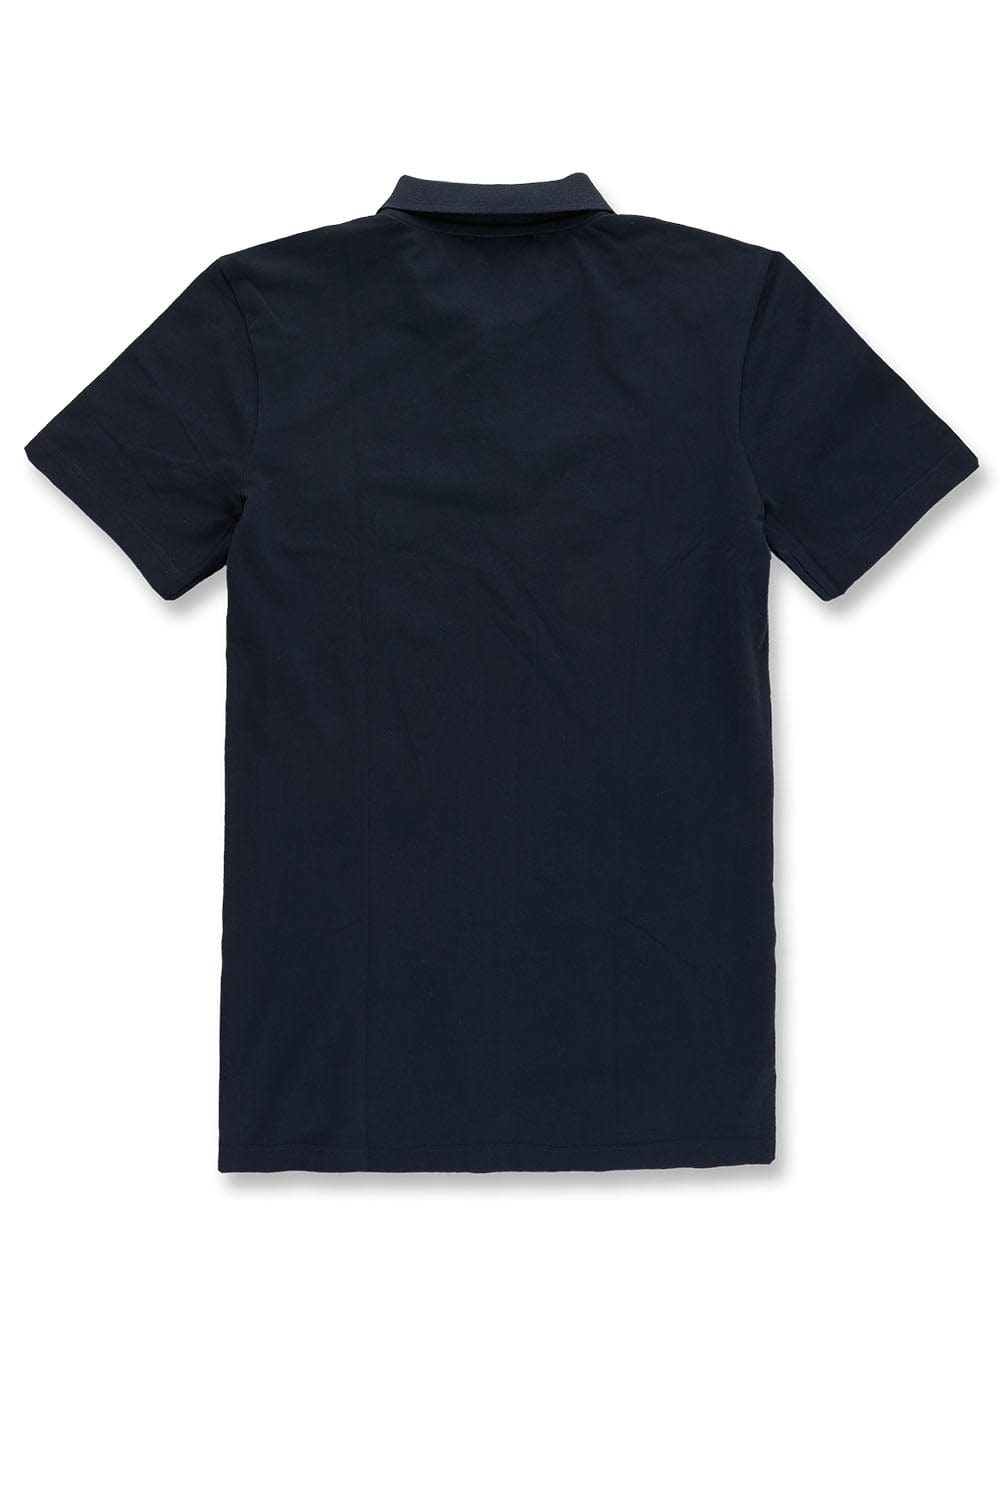 Jordan Craig Premium Pique Polo Shirt (Navy)